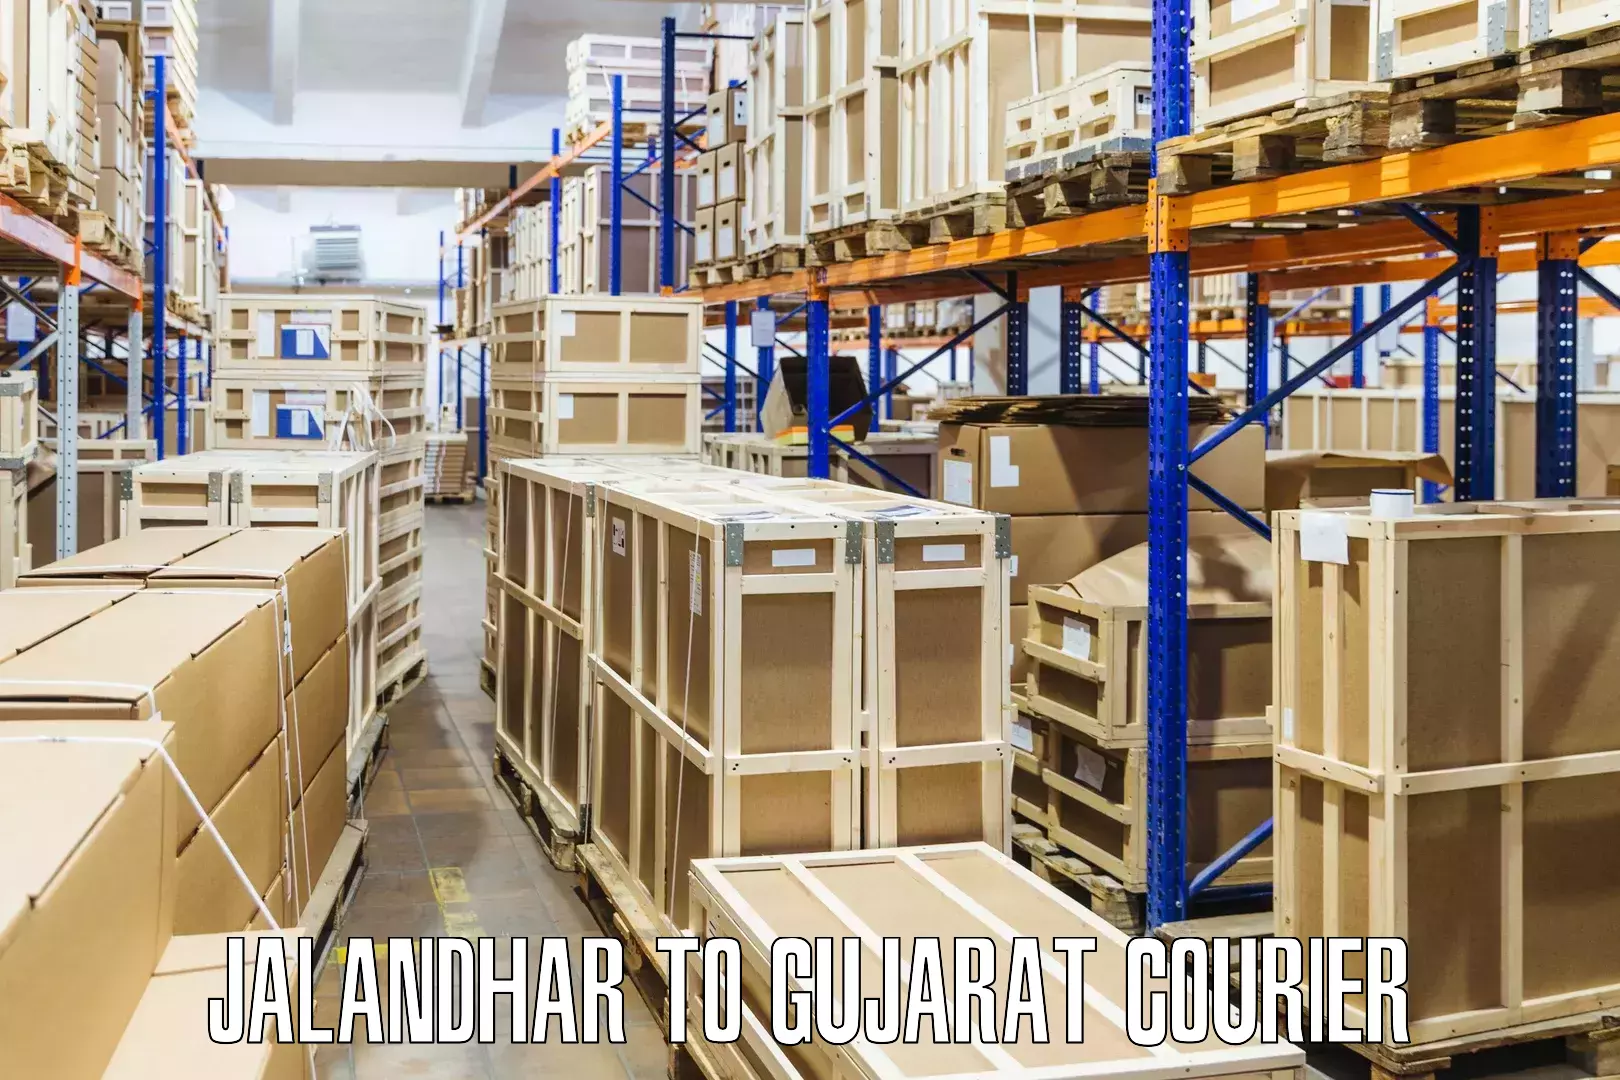 Global freight services Jalandhar to Lunawada